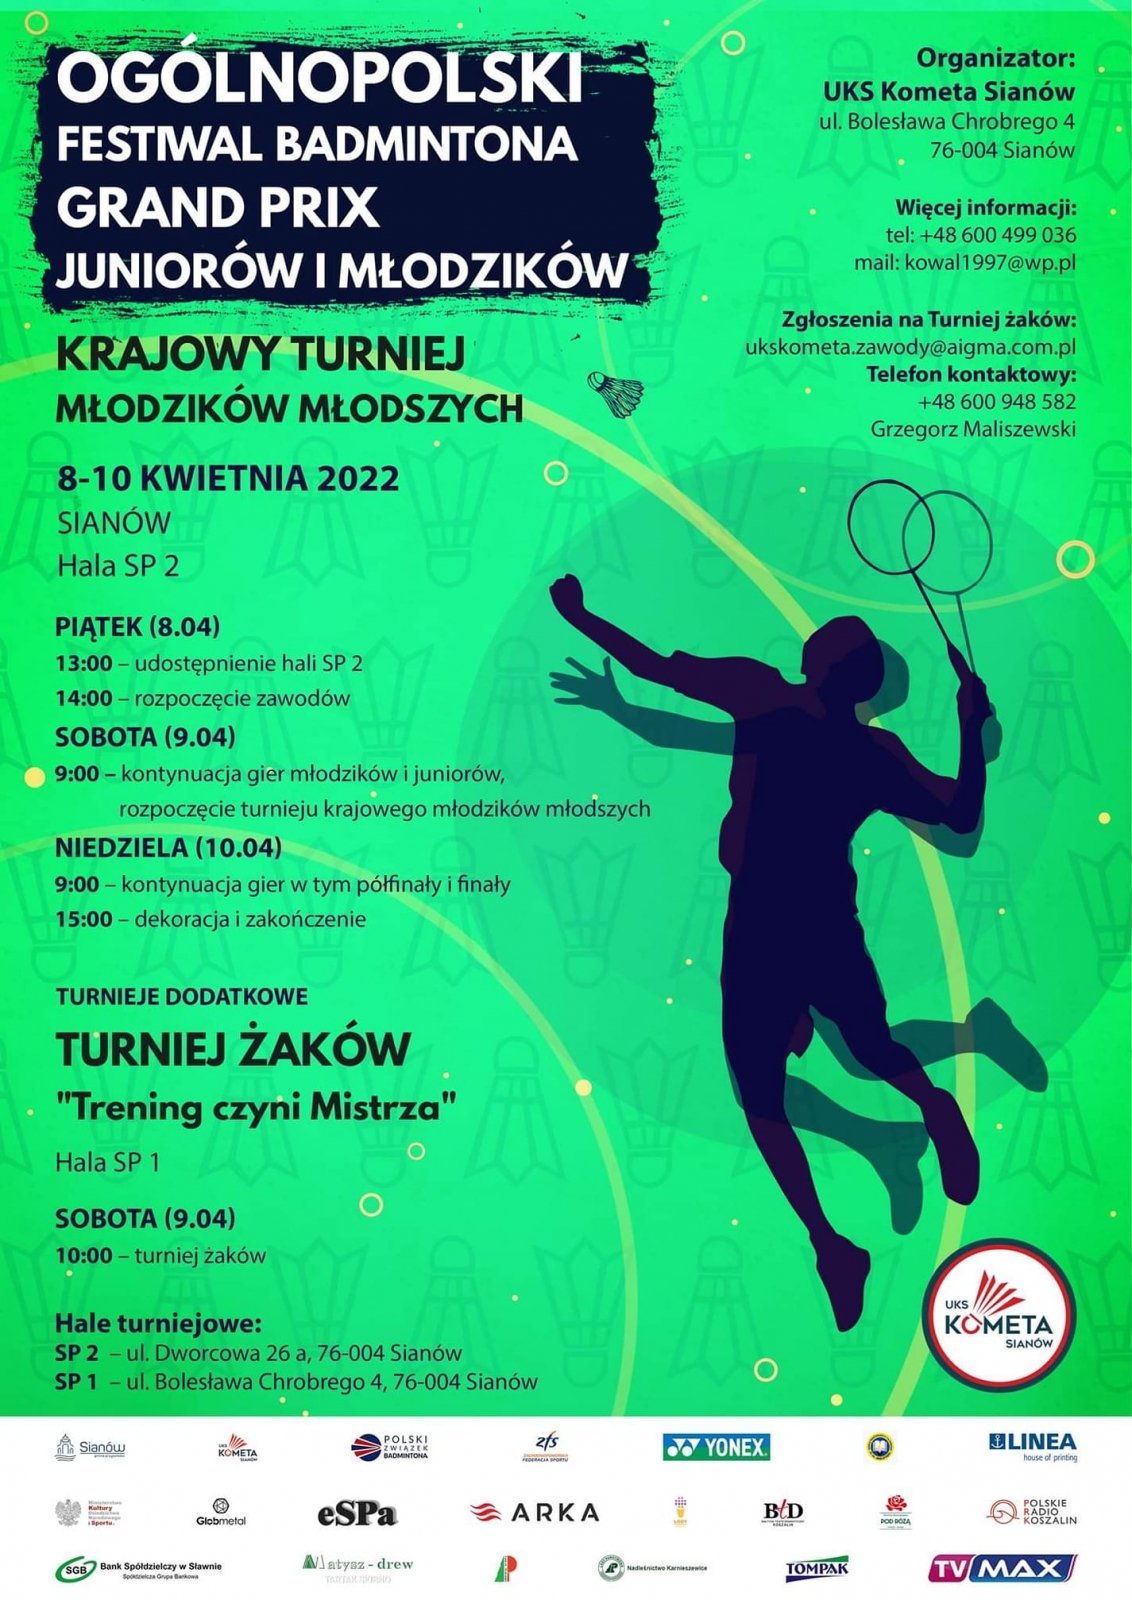 Grand Prix Juniorów i Młodzików i Krajowy Turniej Młodzików Młodszych.